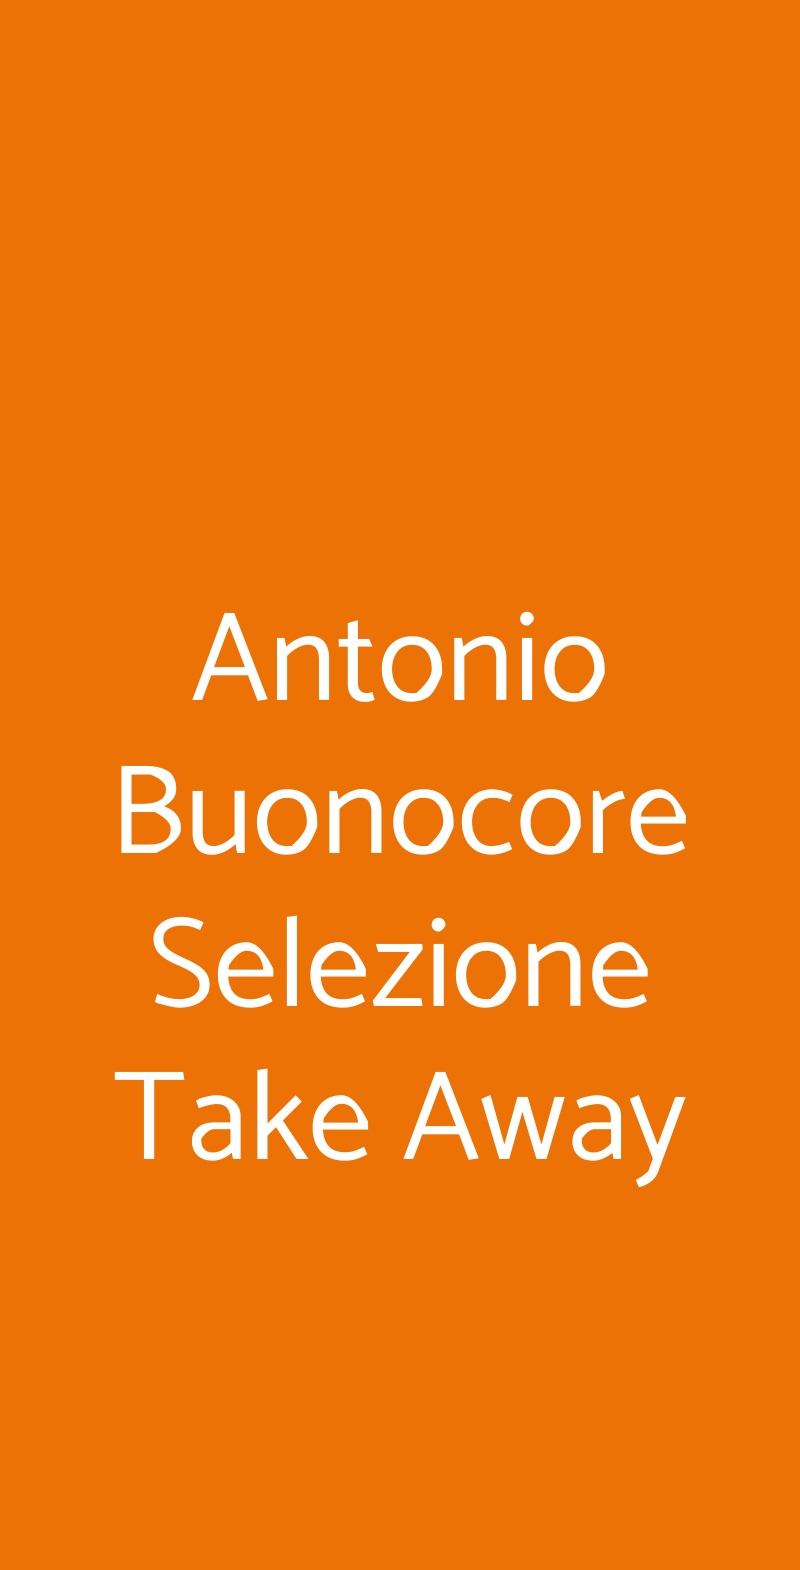 Antonio Buonocore Selezione Take Away Napoli menù 1 pagina